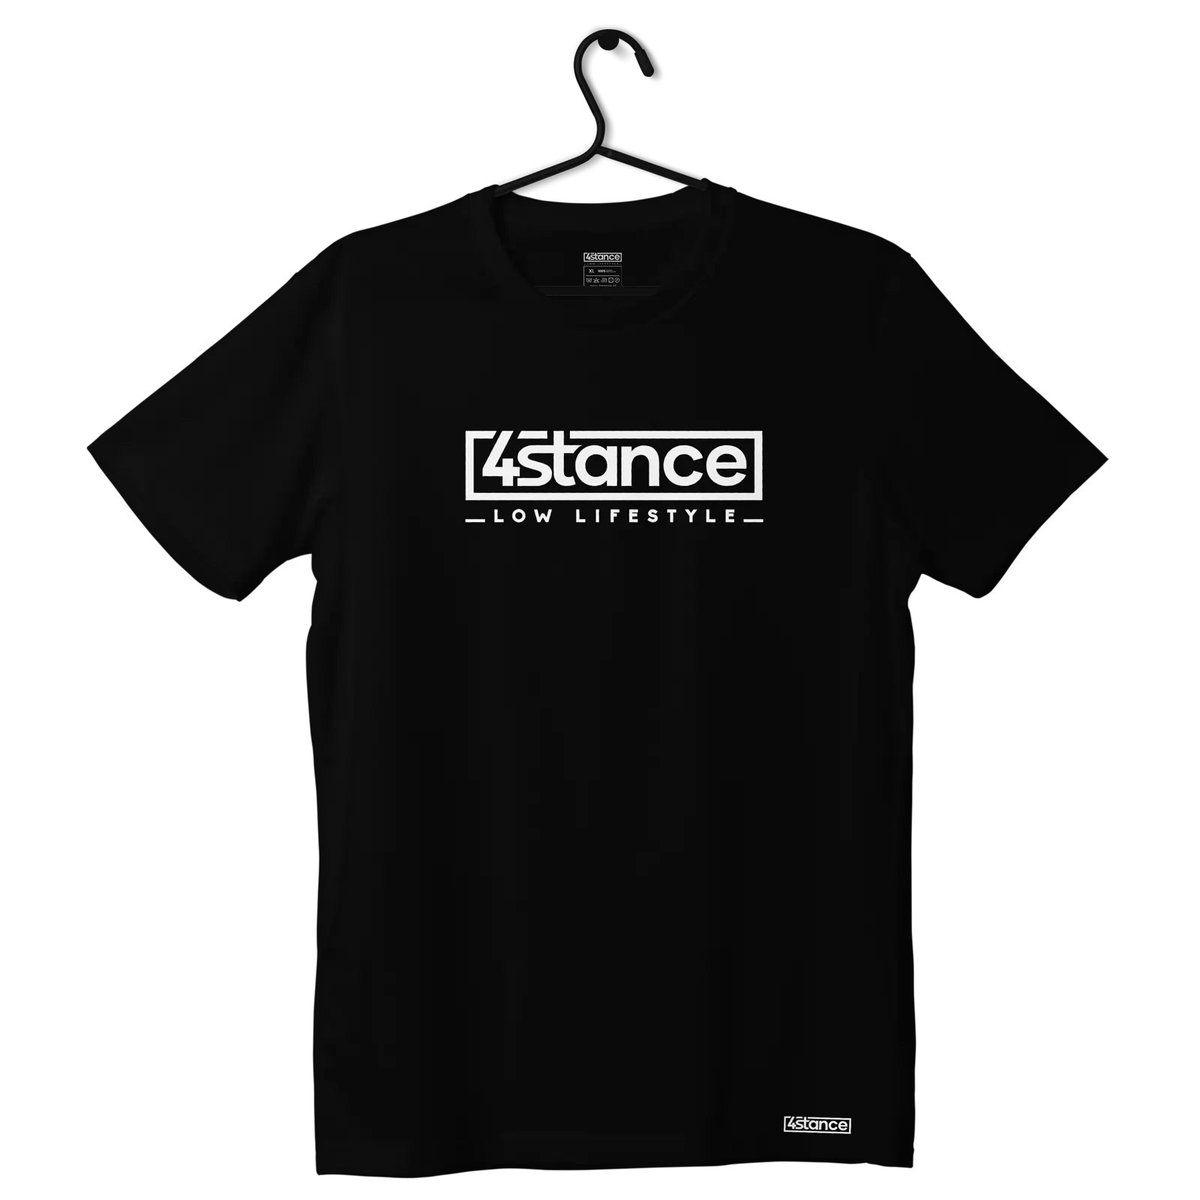 Zdjęcia - Odzież motocyklowa Classic T-shirt koszulka 4STANCE  czarna-S 